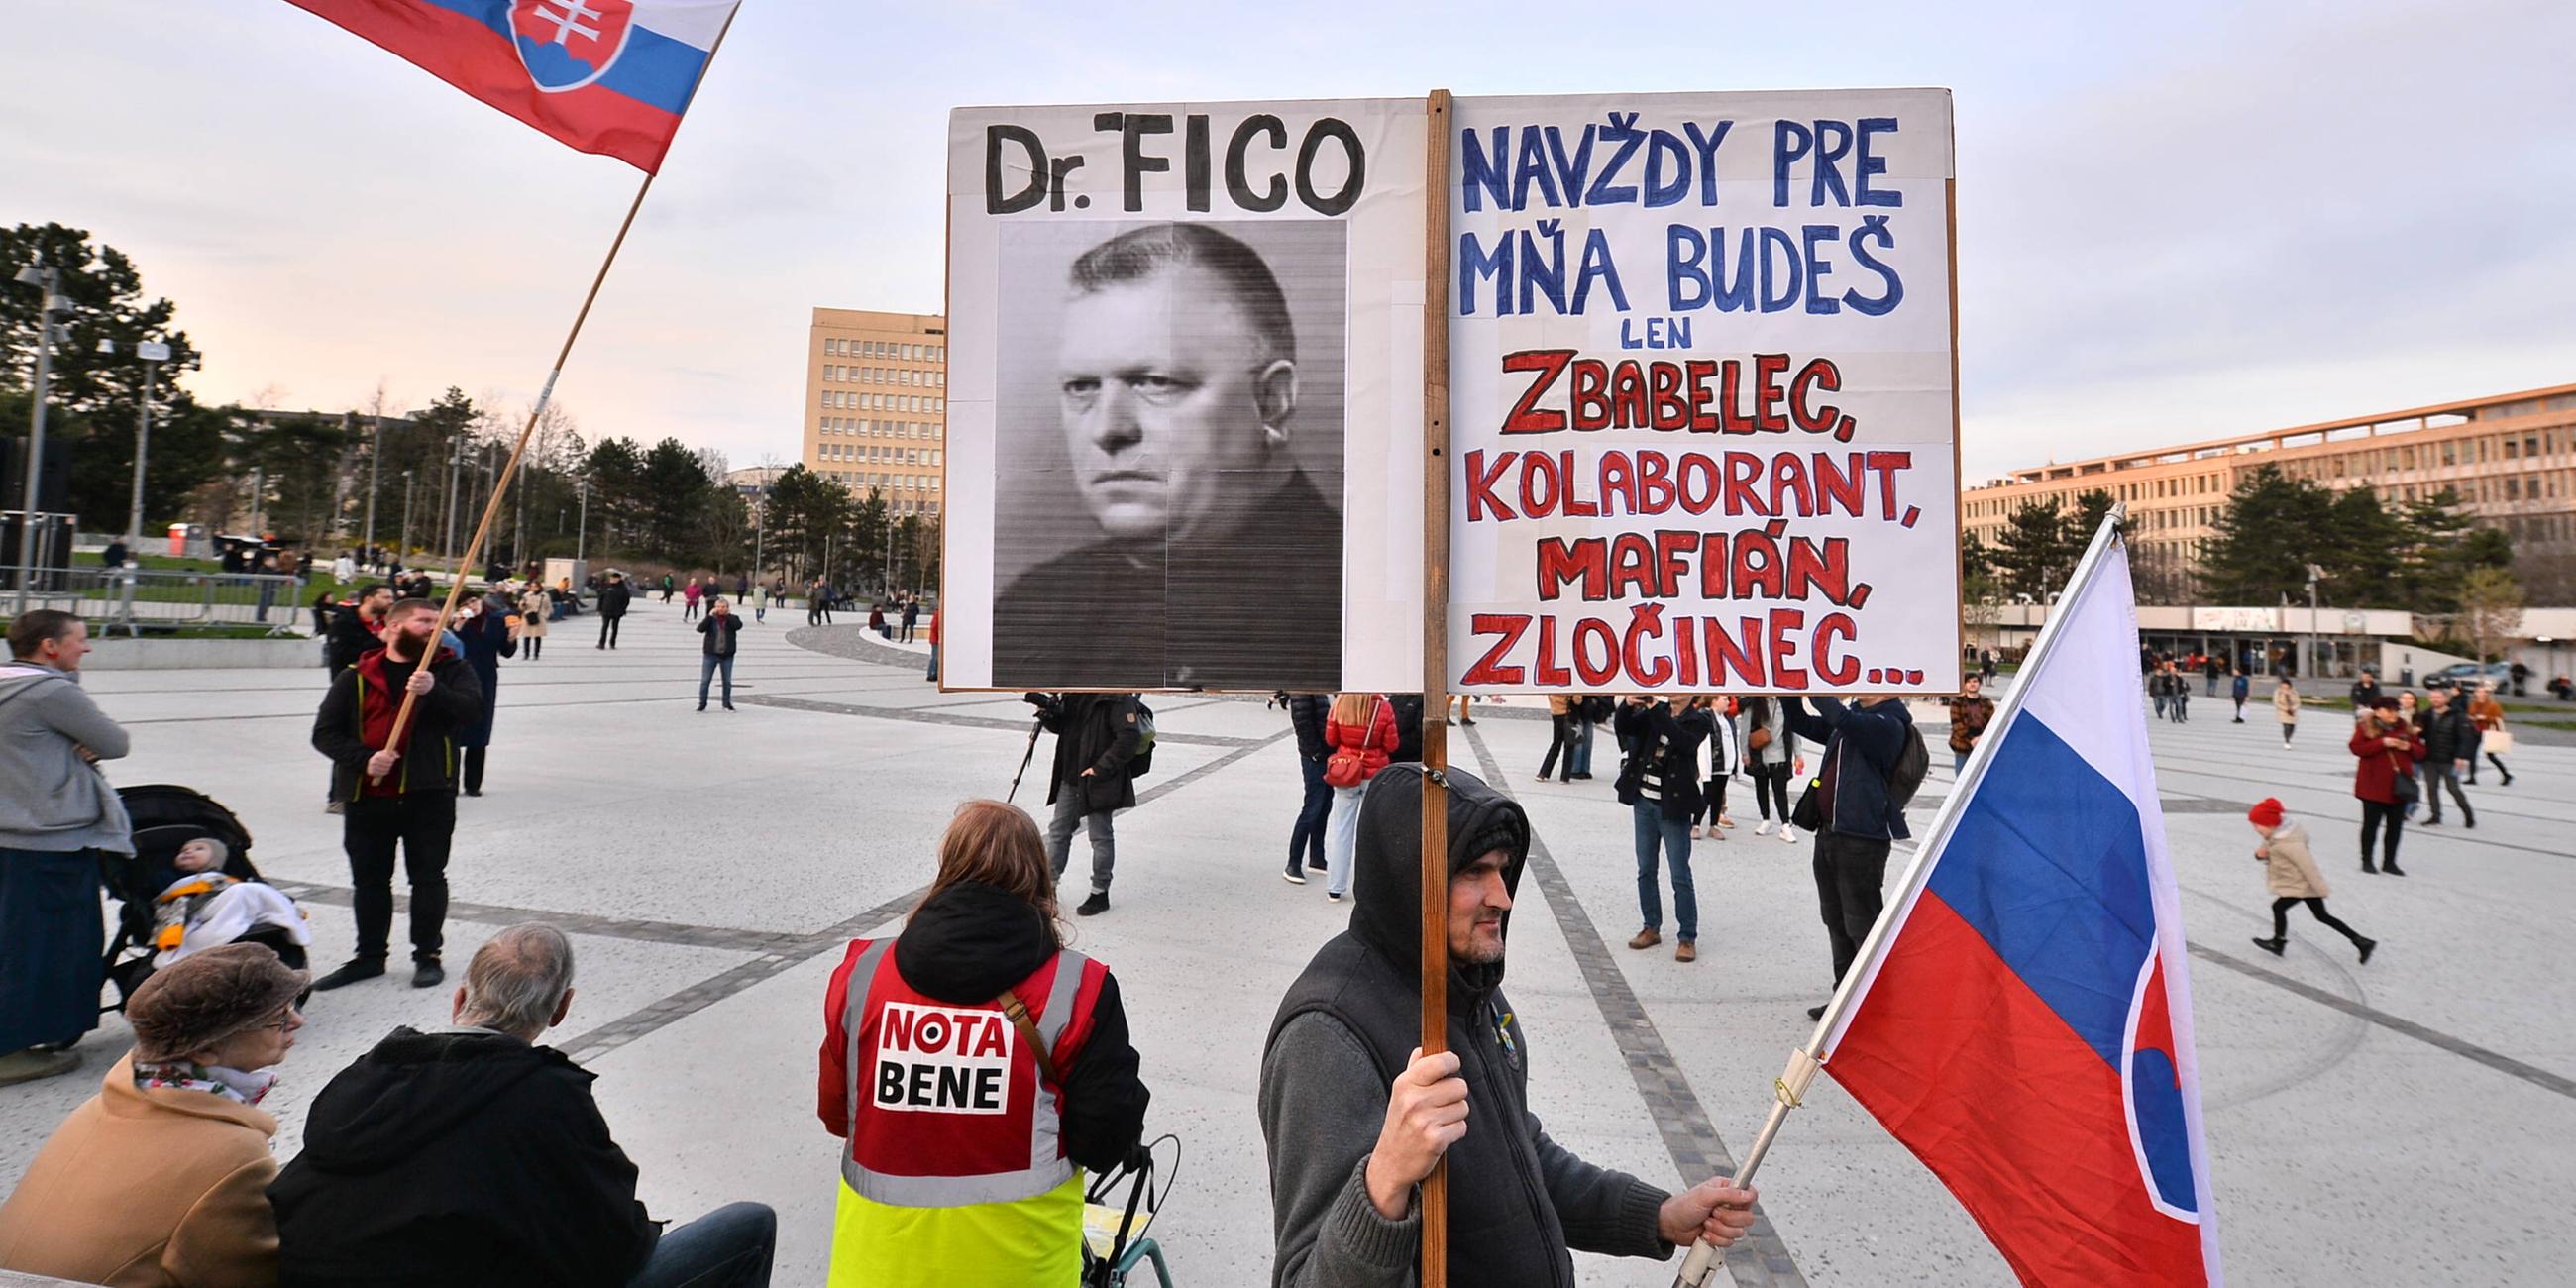 Eine demonstrierende Menschenmenge mit slowakischen Fahnen und Plakaten.